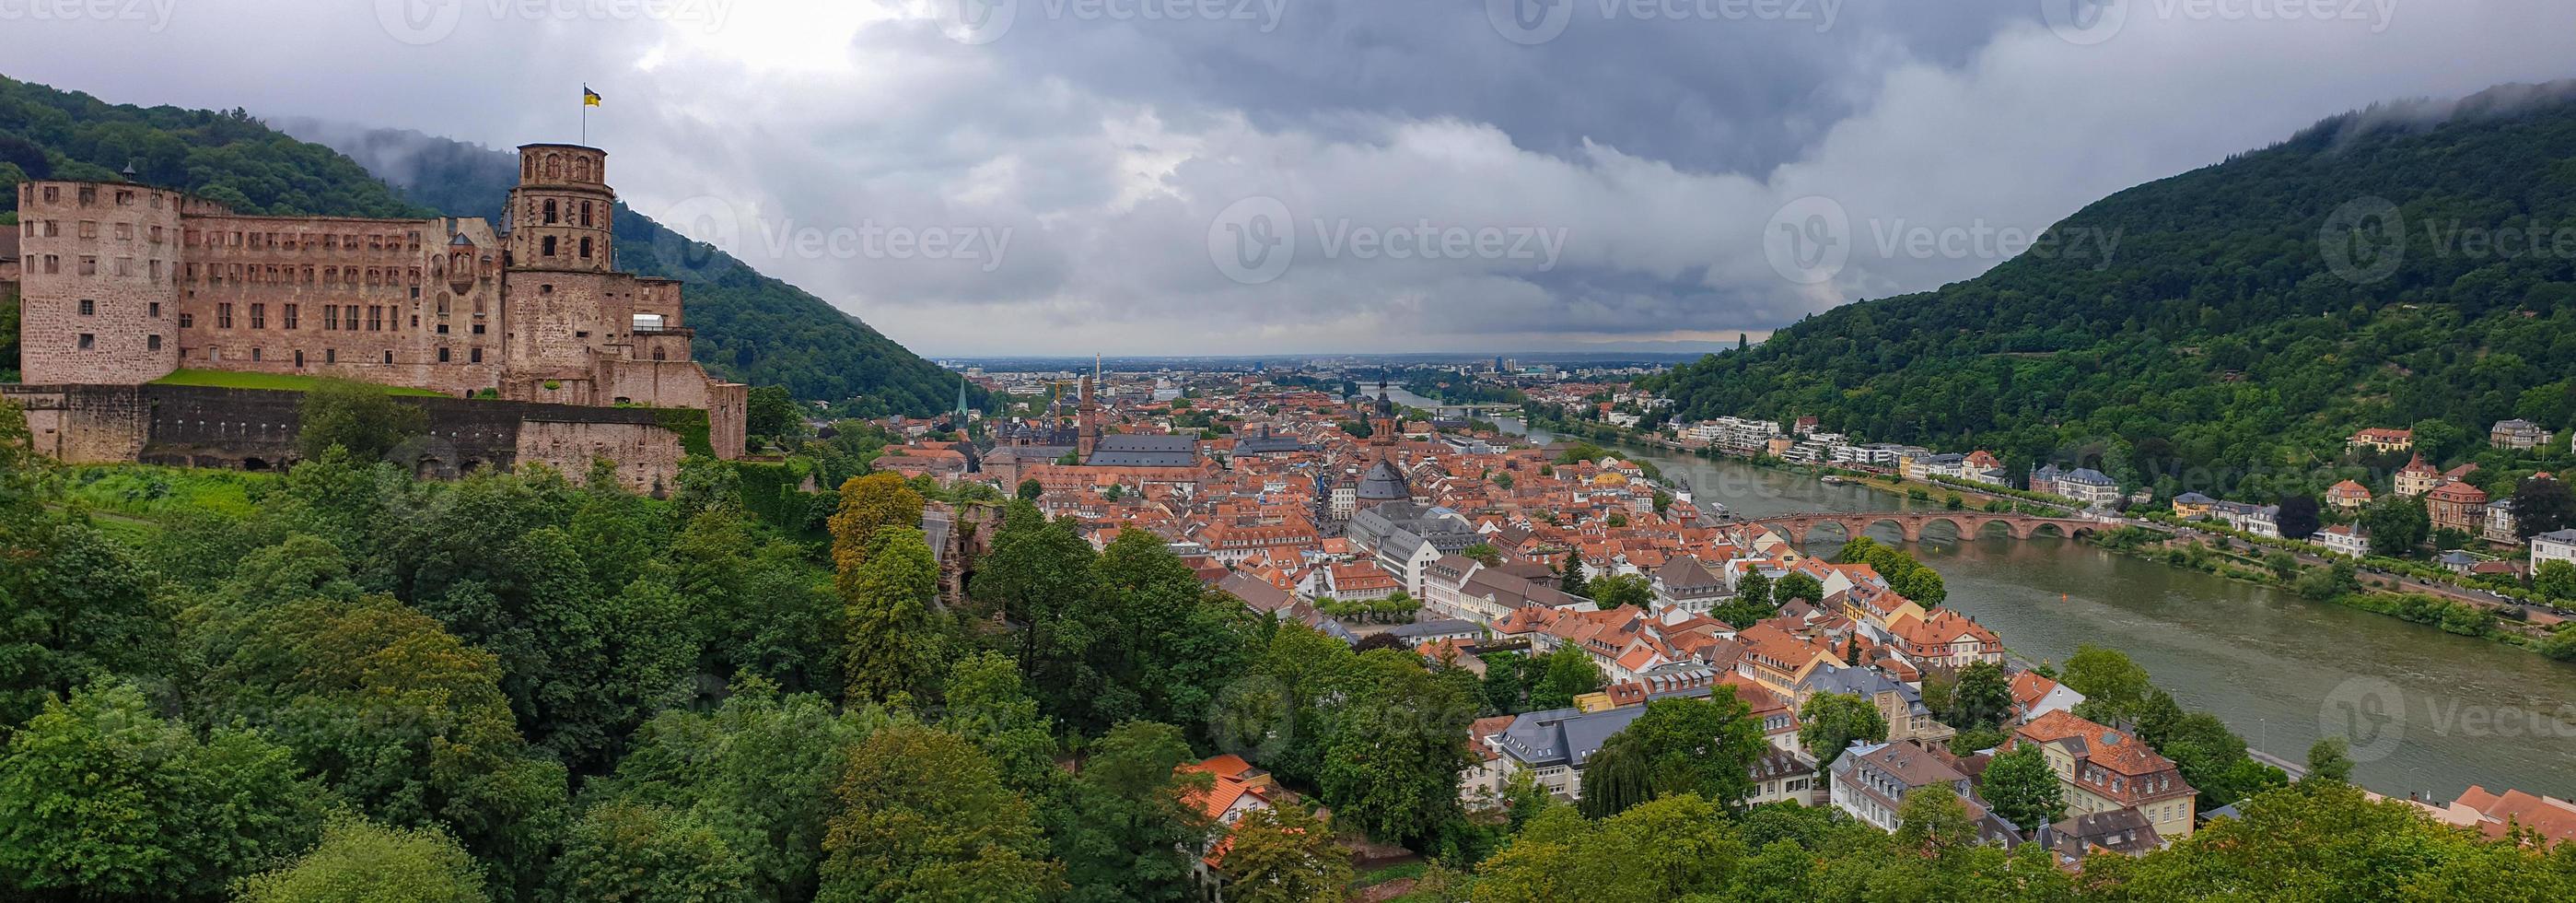 panorama av Heidelbergs slott och medeltida stad Heidelberg, Tyskland foto